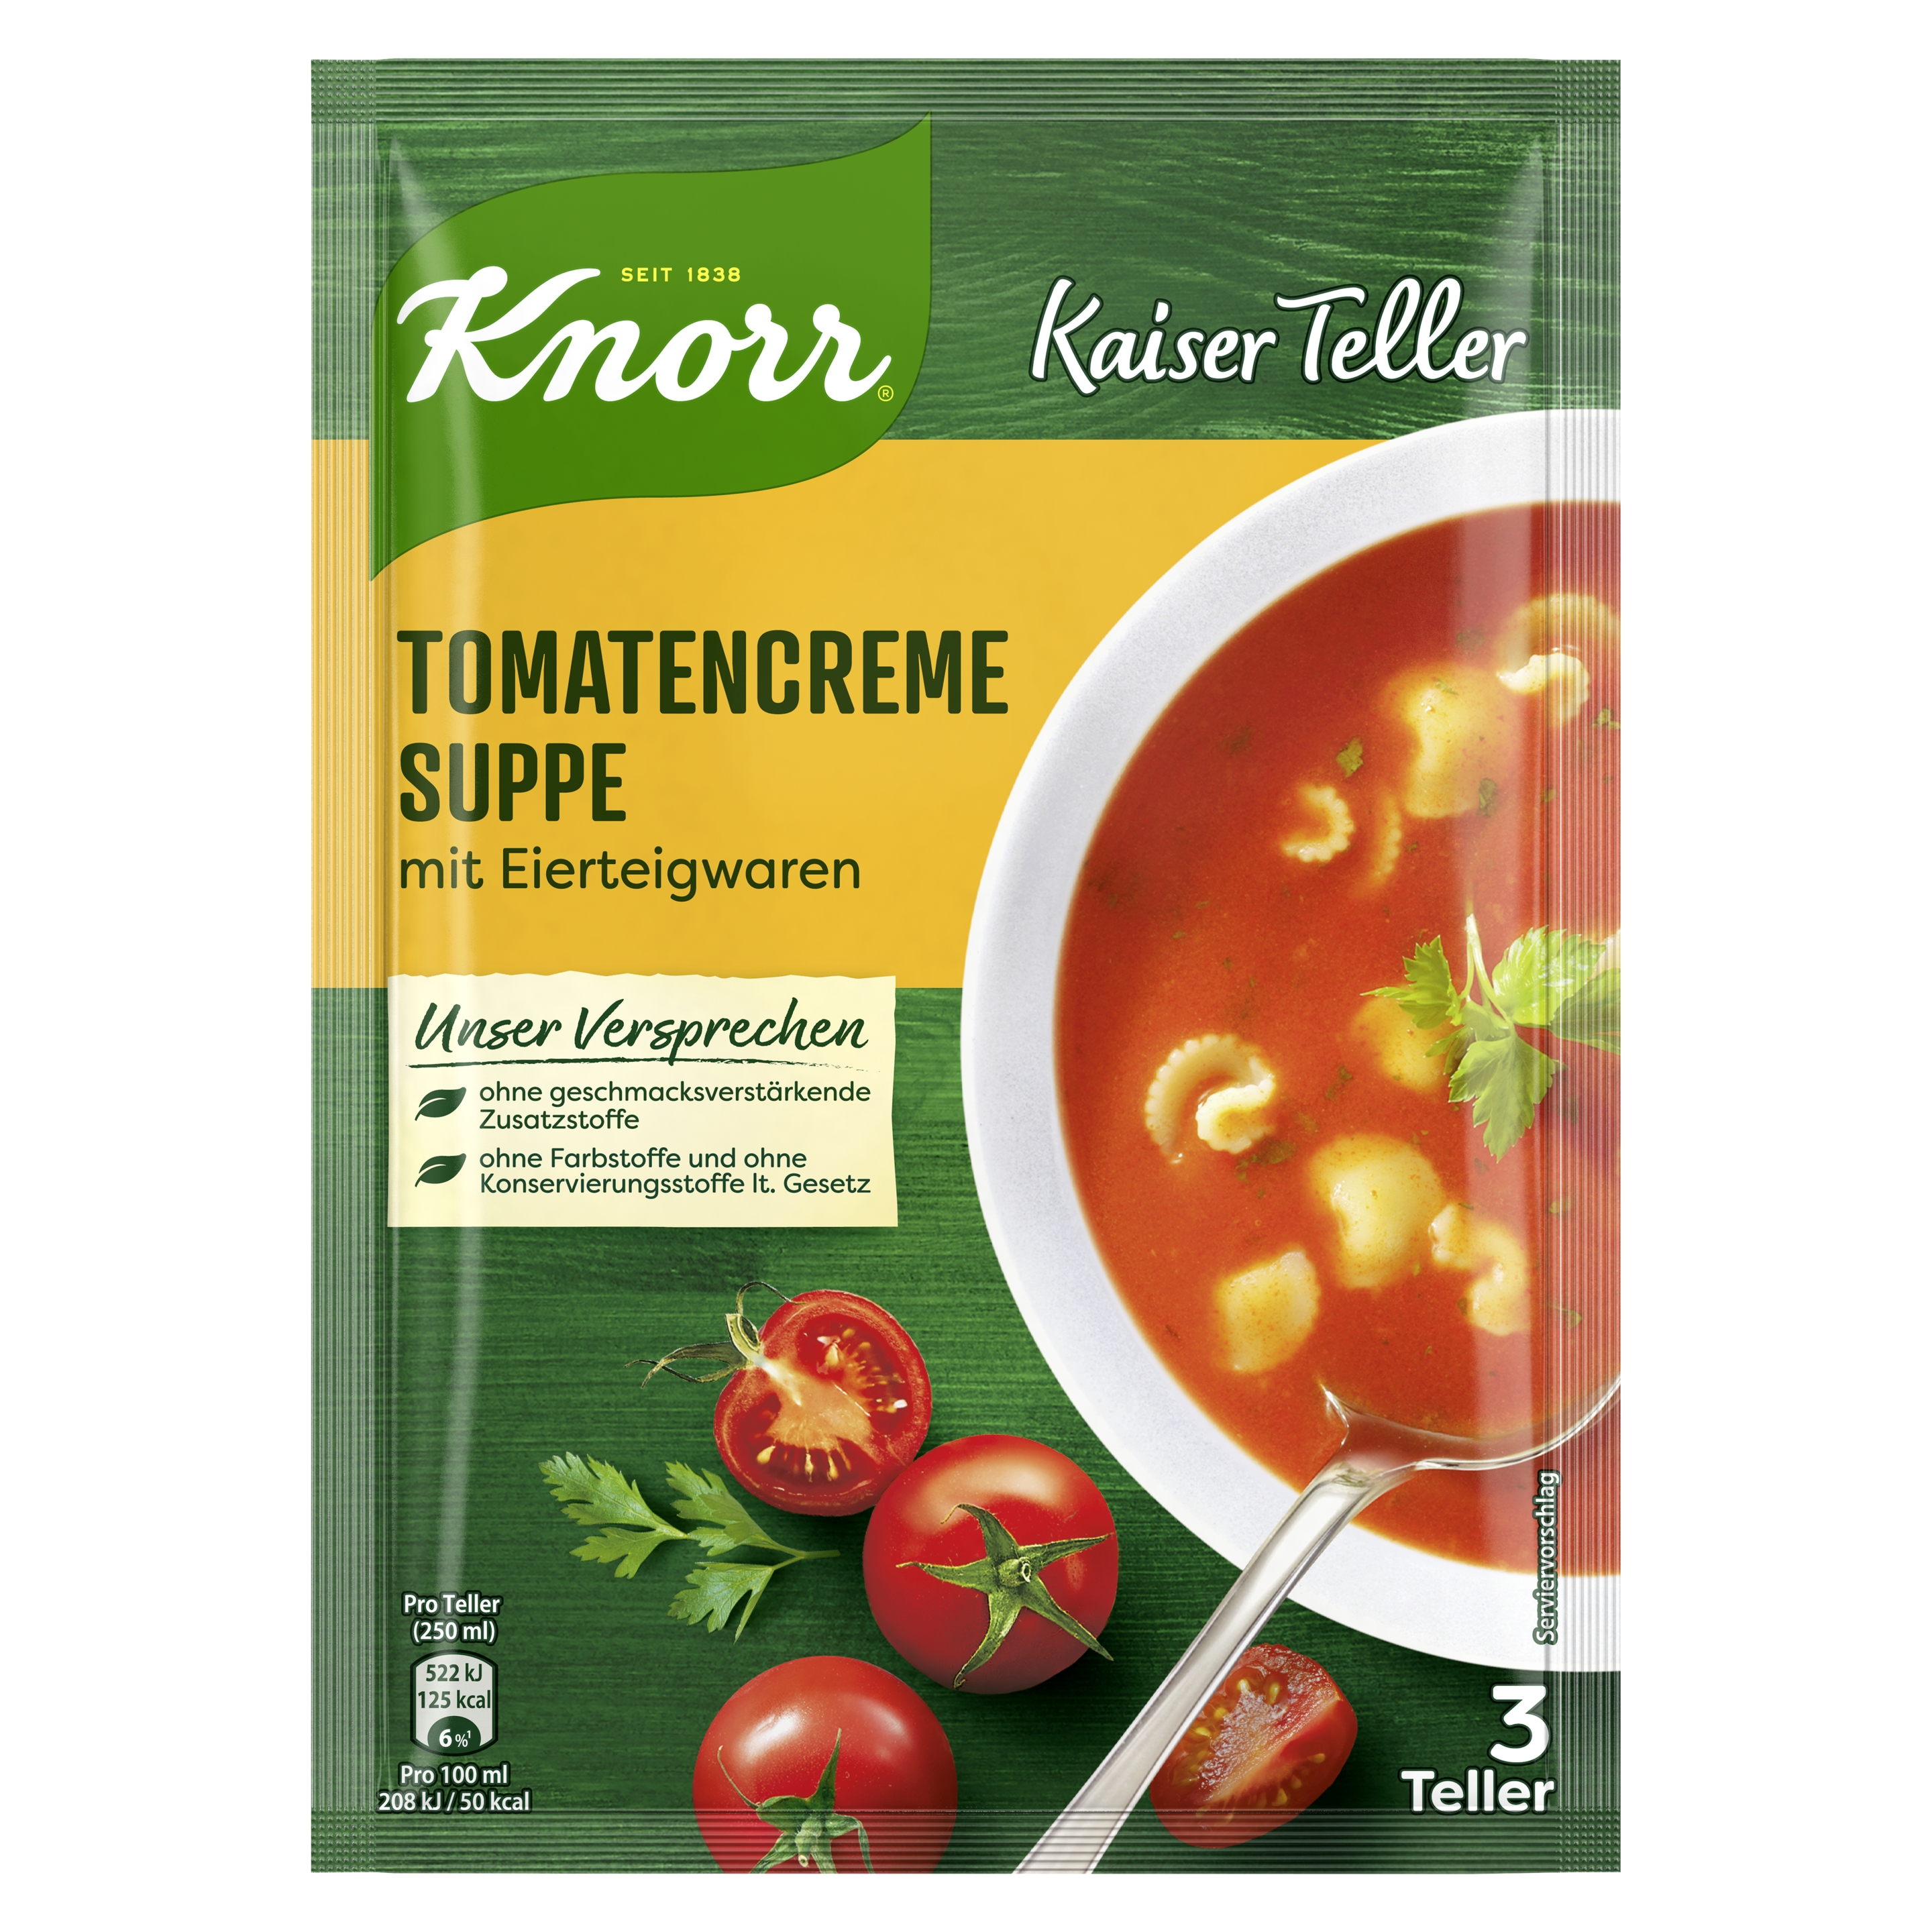 Knorr Kaiser Teller Tomatencreme Suppe 3 Teller